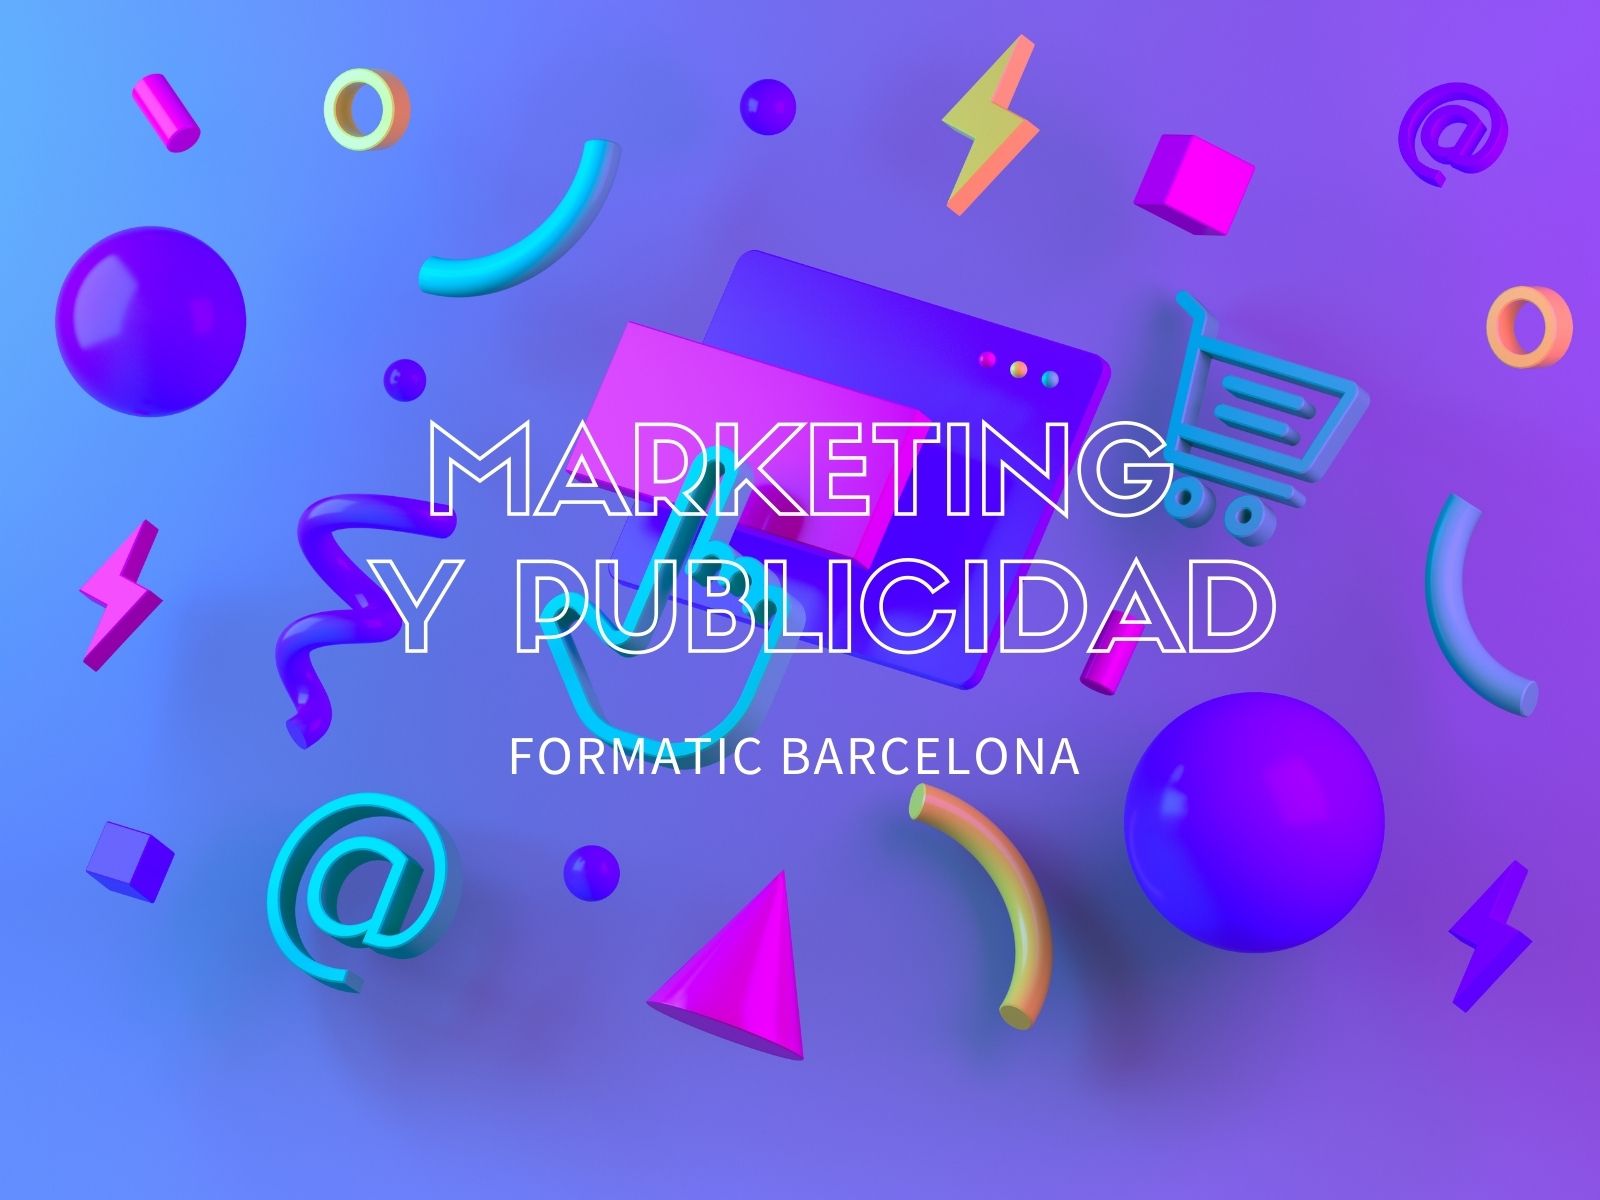 Marketing y publicidad, una profesión clave del siglo XXI | Escuela Universitaria Formatic Barcelona